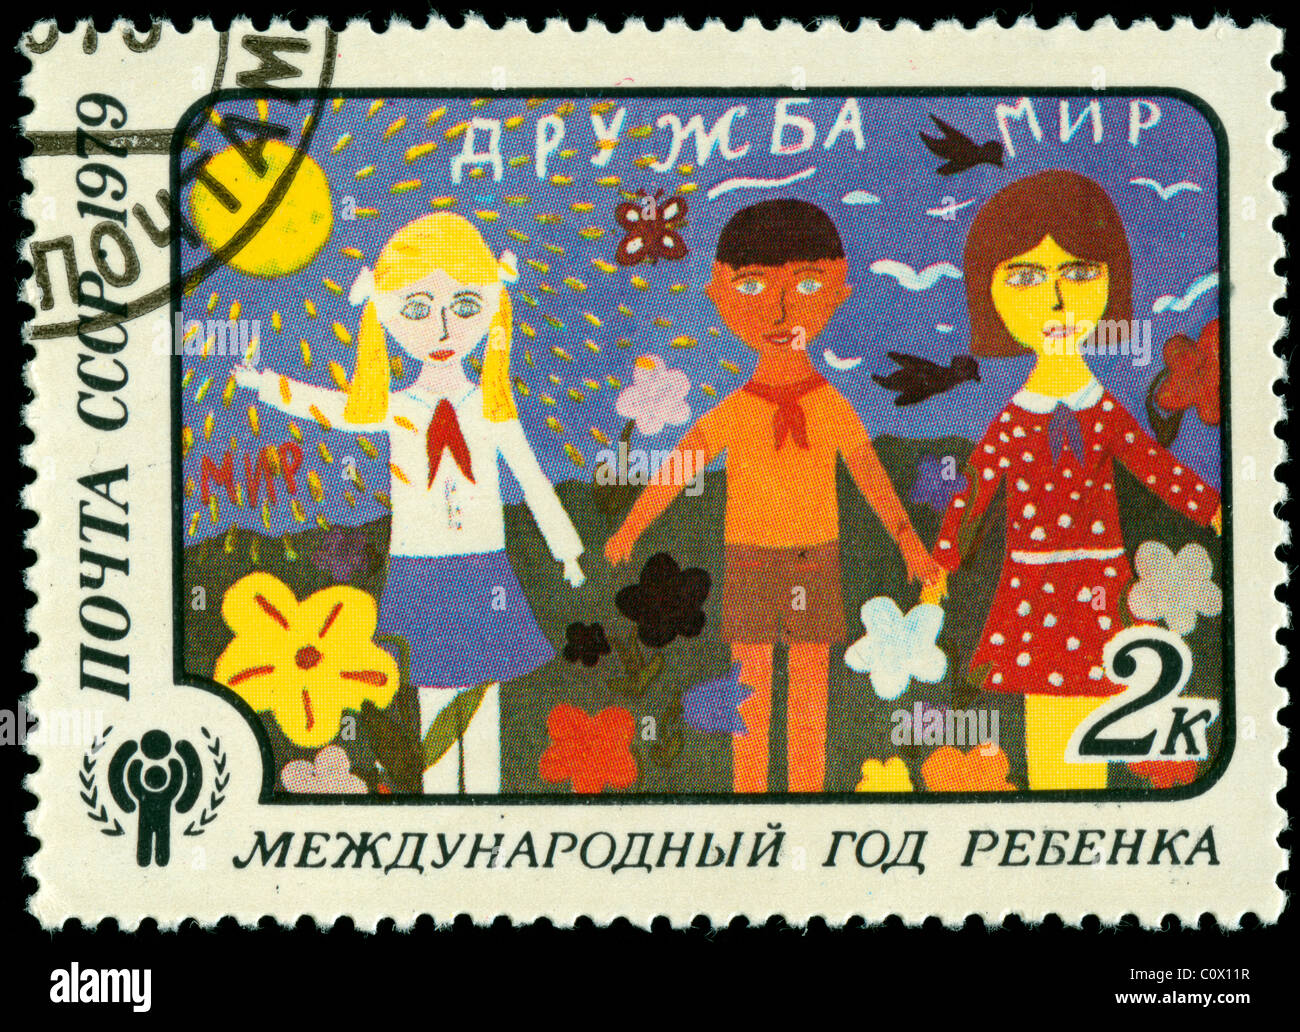 Stamp de CCCP avec dessin d'enfant et de l'emblème de l'UNICEF Banque D'Images